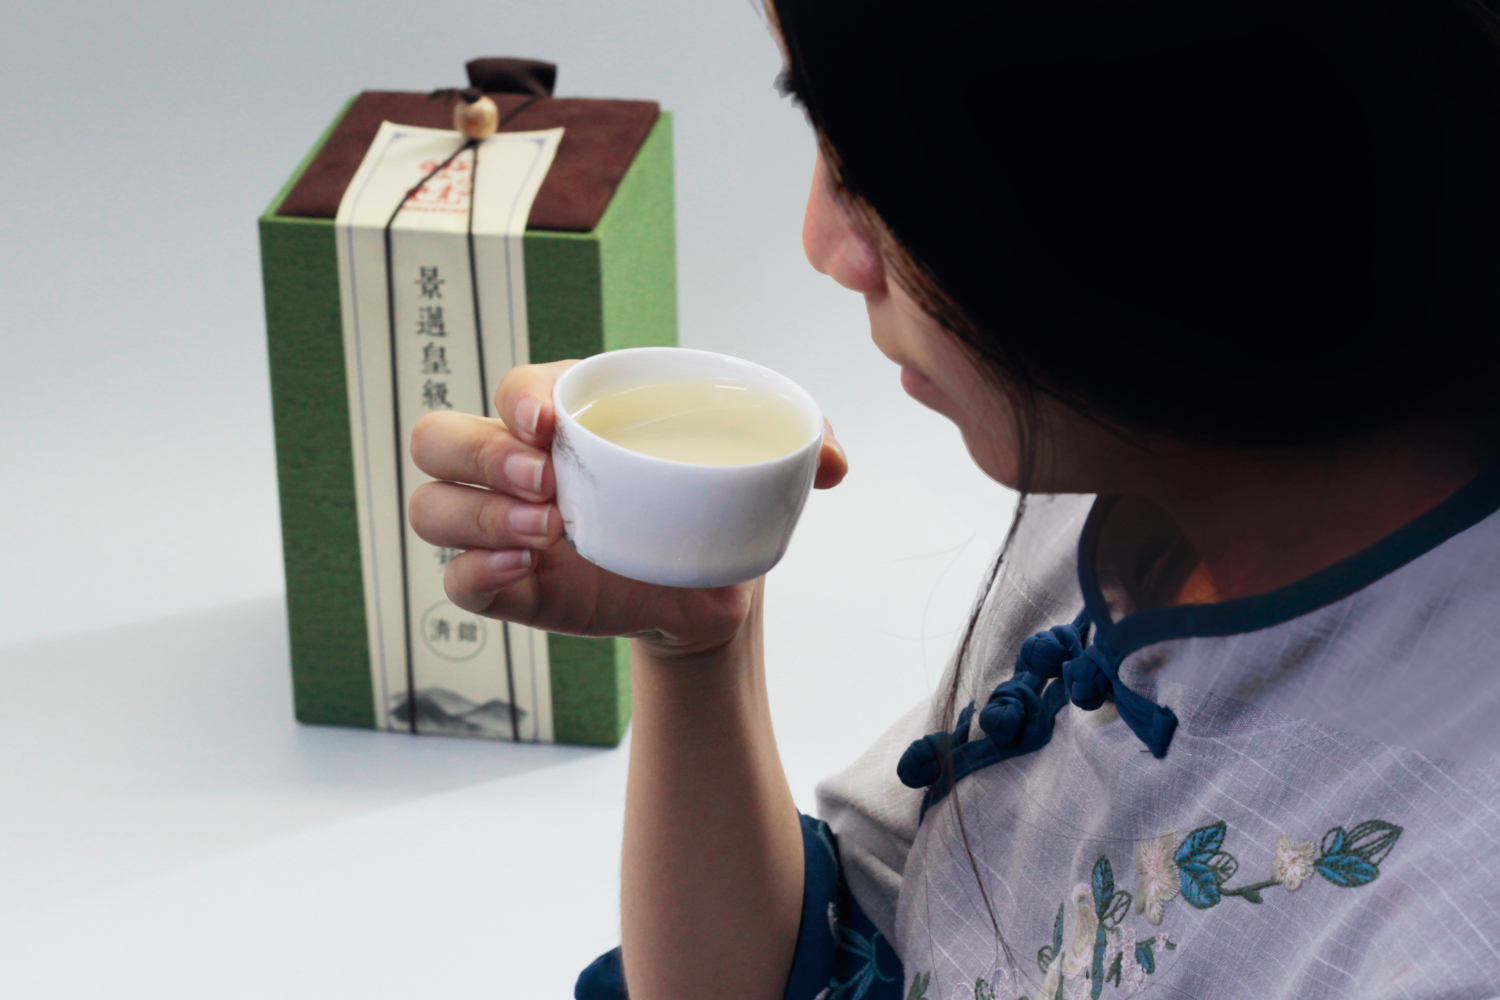 【美图】分享夏日里的一款好茶,景迈山月光白芽,清甜的滋味